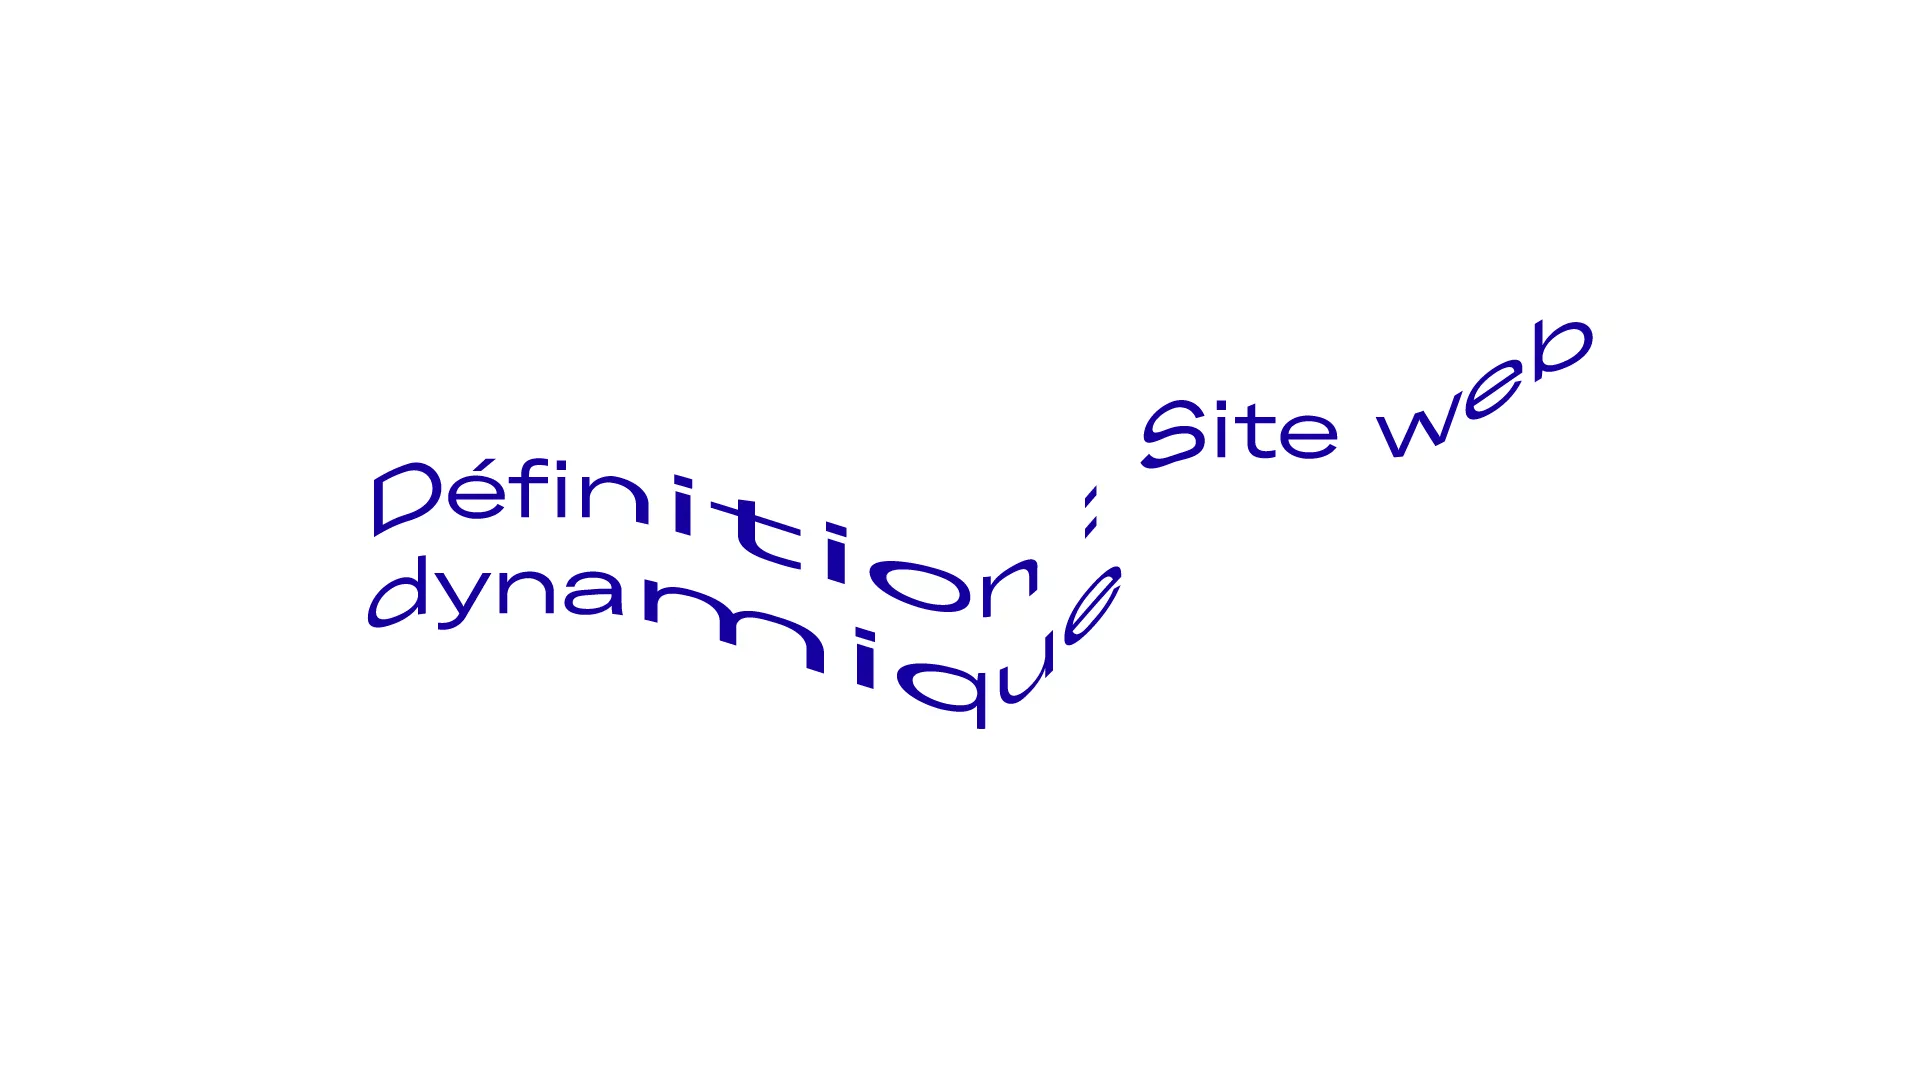 Définition : Site web dynamique